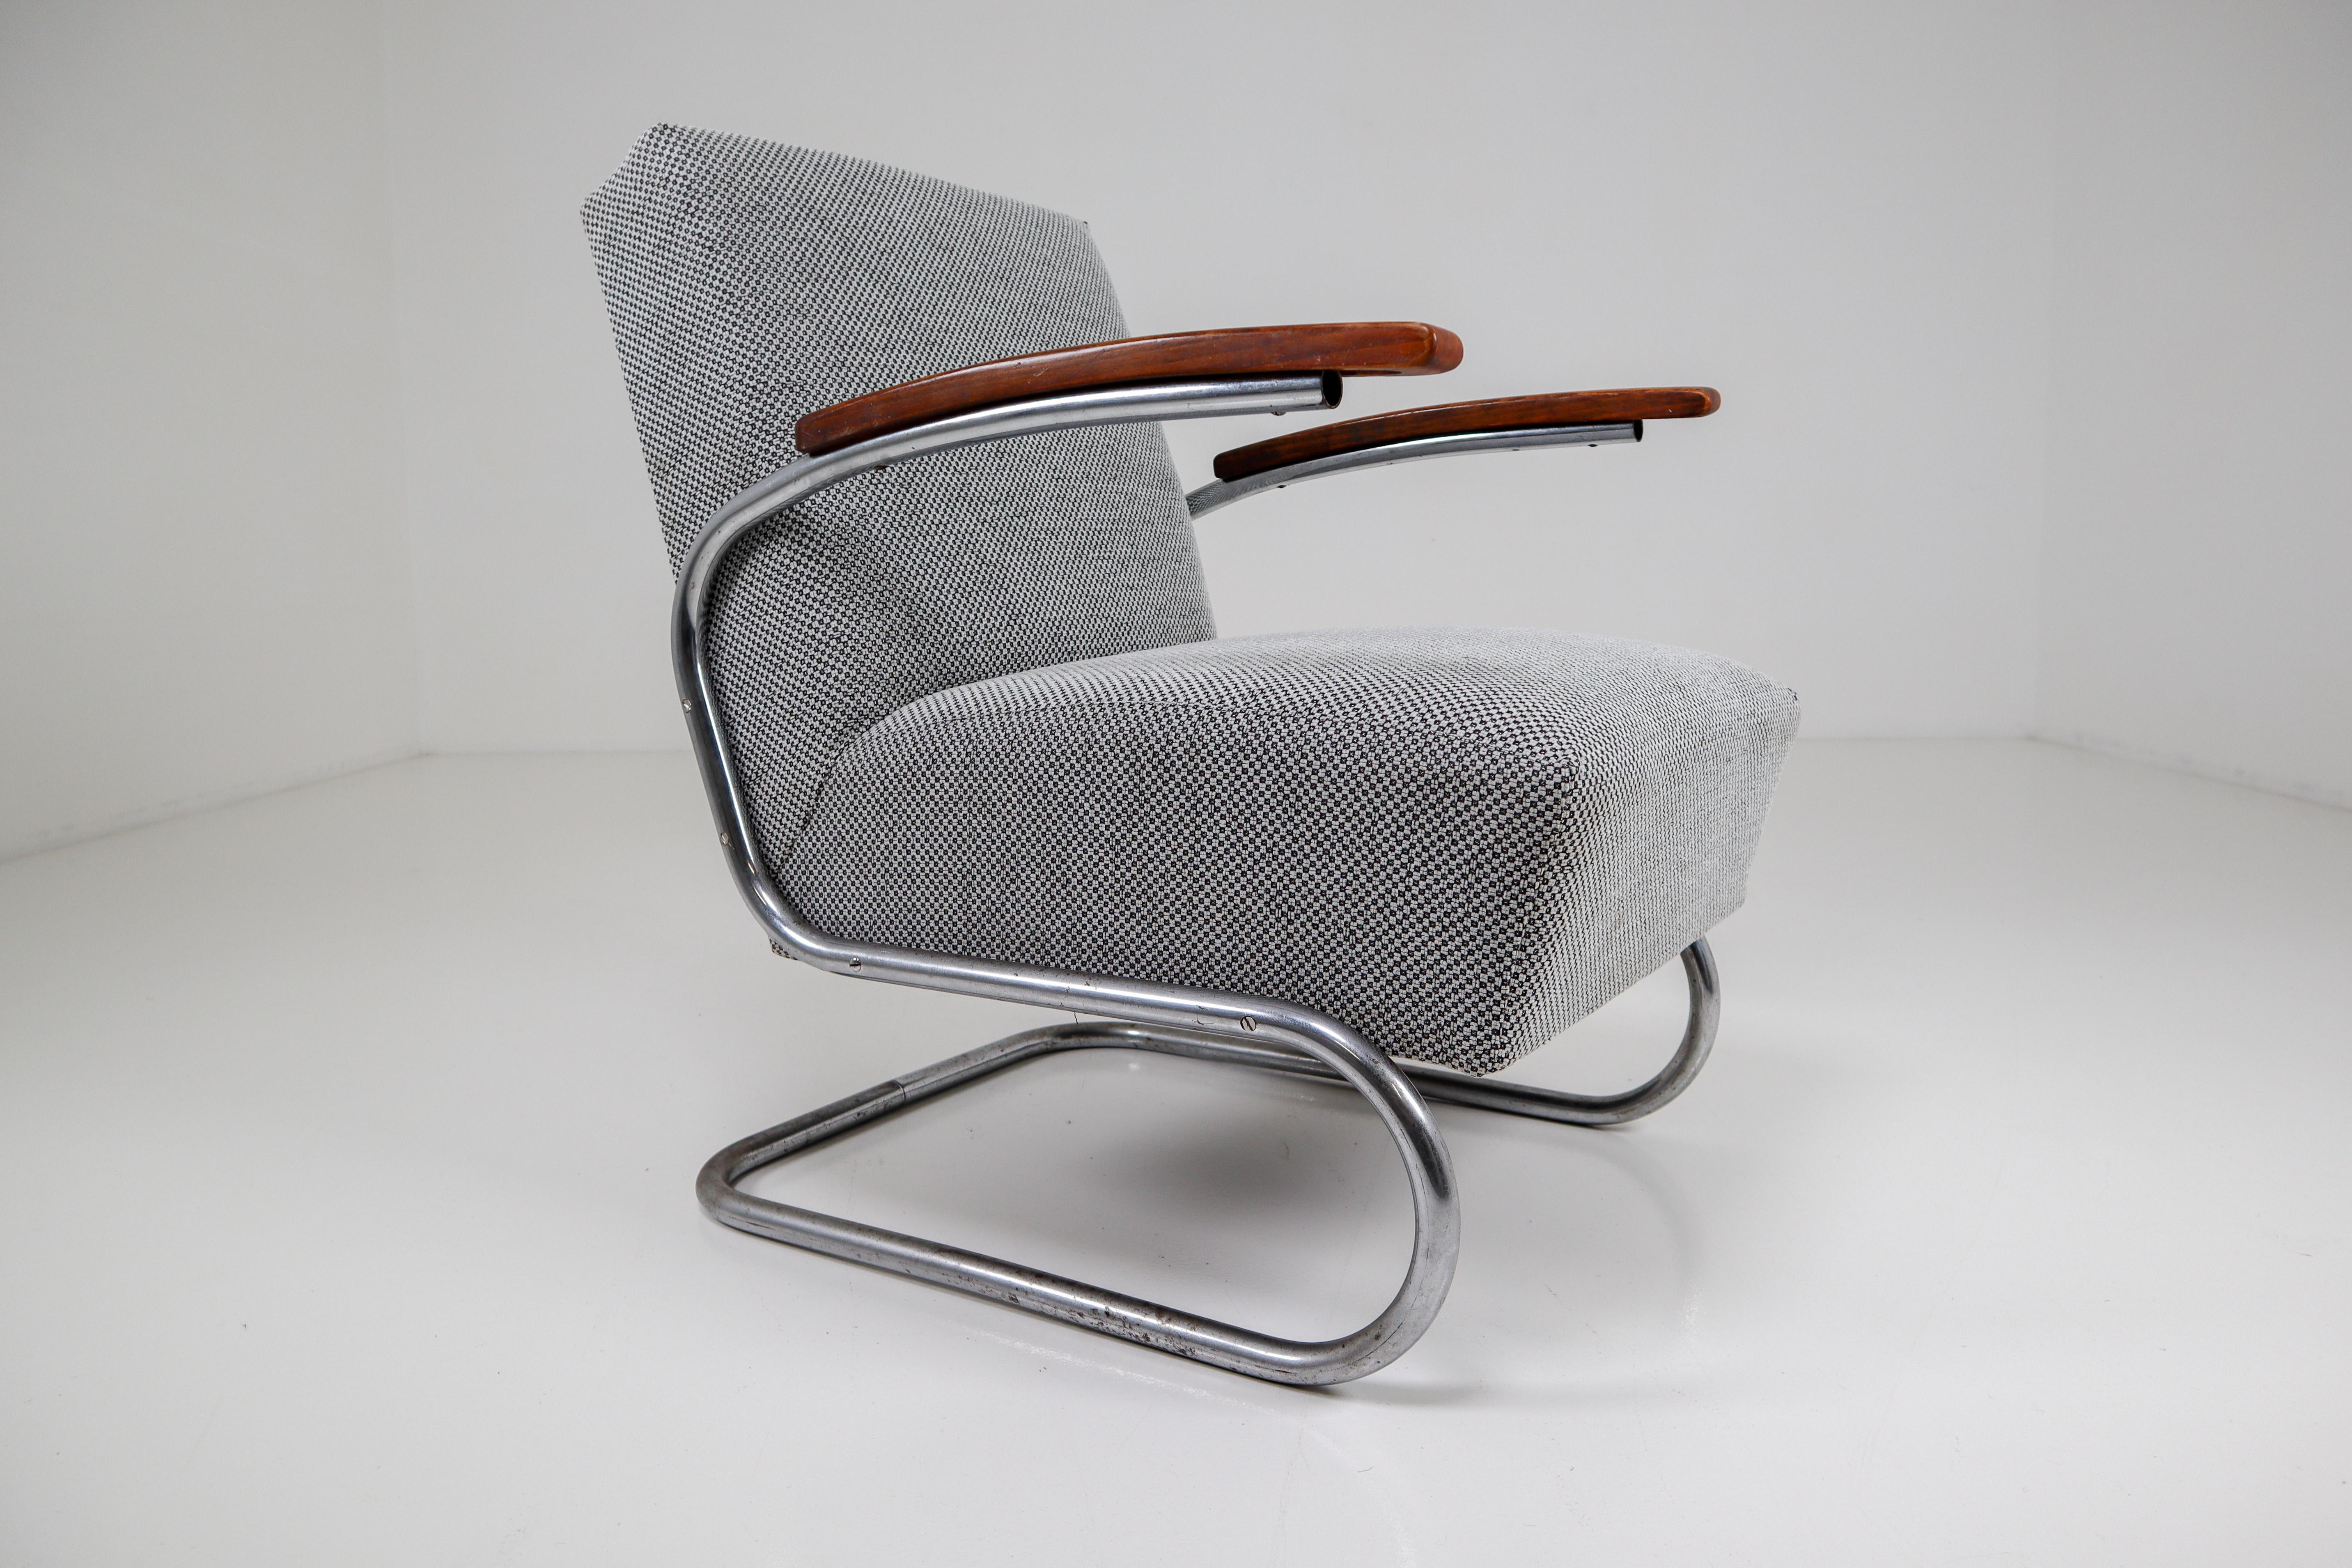 Chrome Steel Armchair by Thonet circa 1930s Midcentury Bauhaus Period (Deutsch)